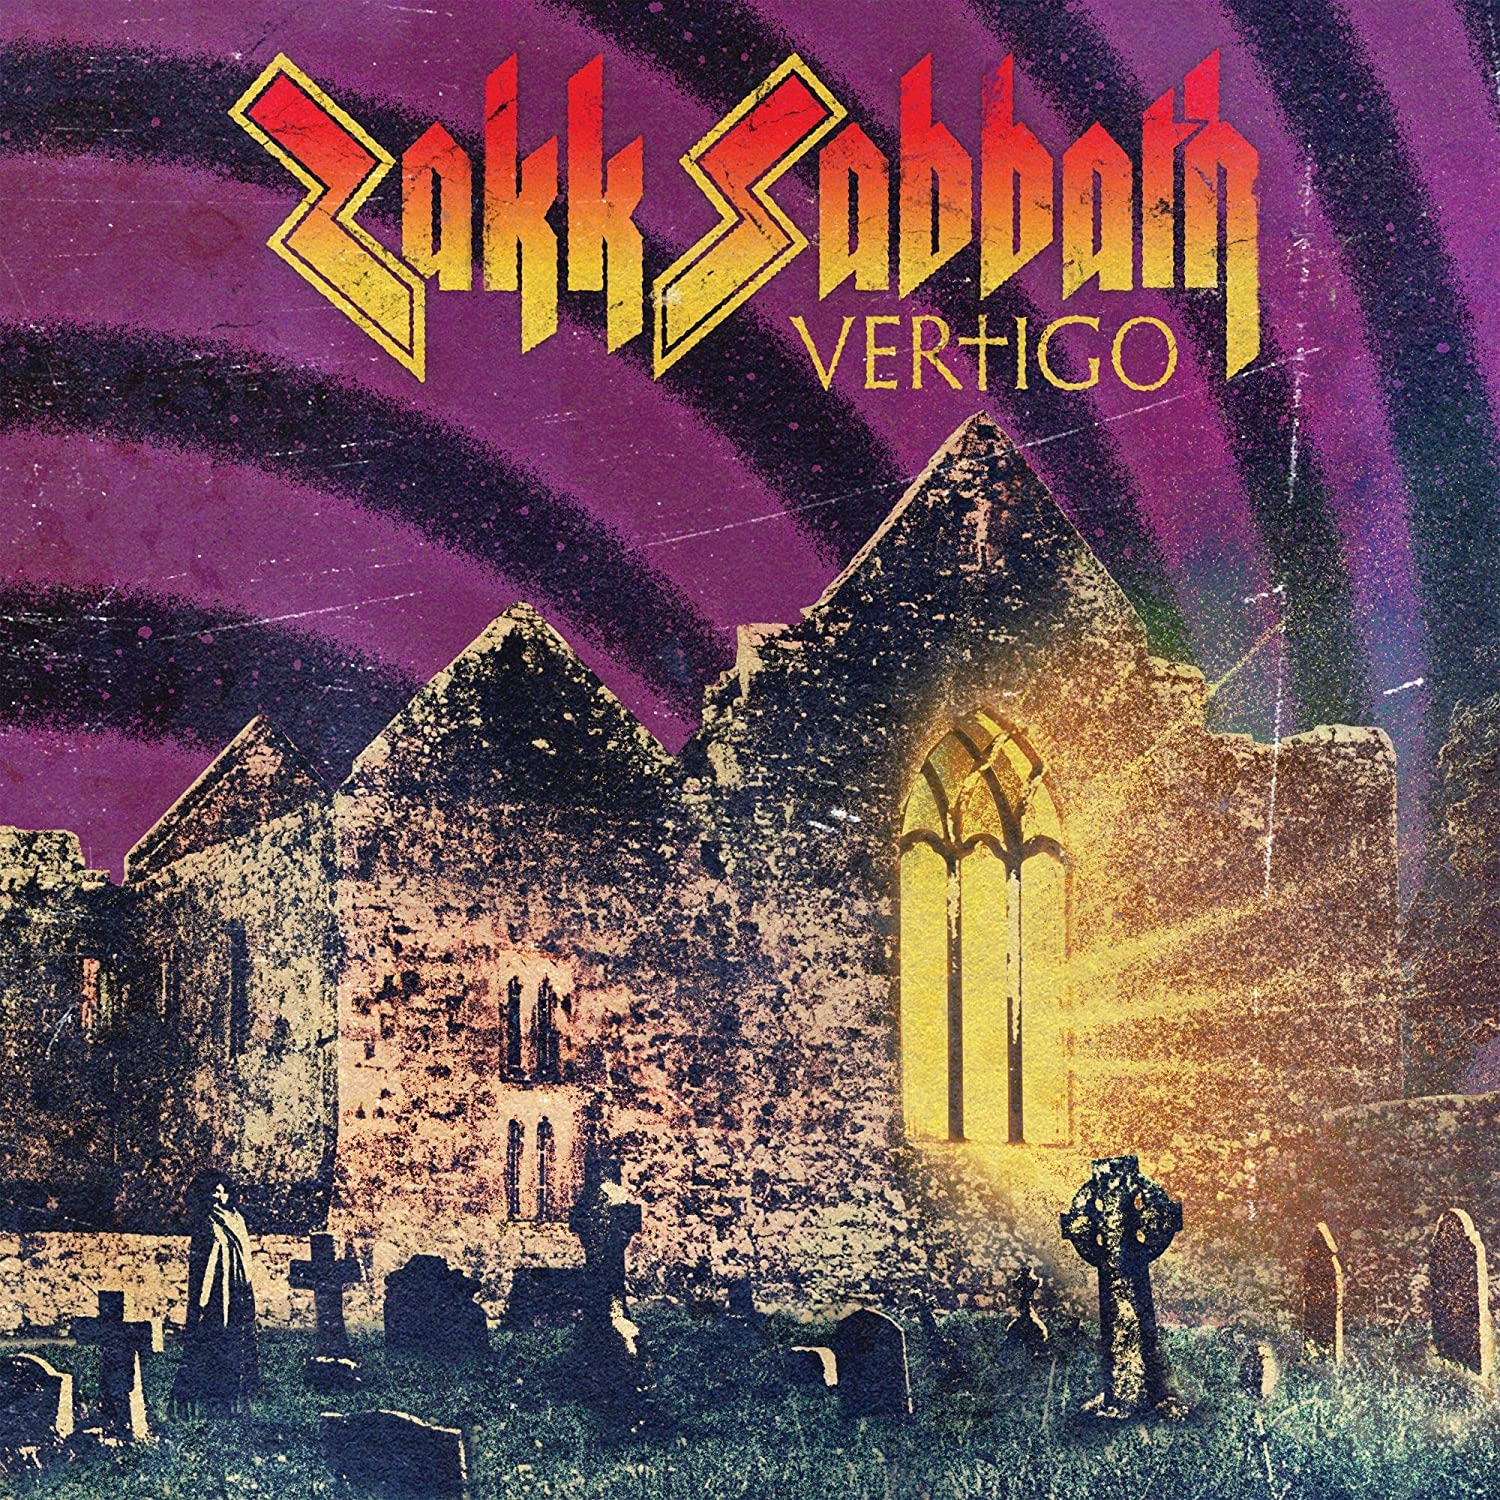 Zakk Wylde - Zakk Sabbath Vertigo (Vinyl LP)